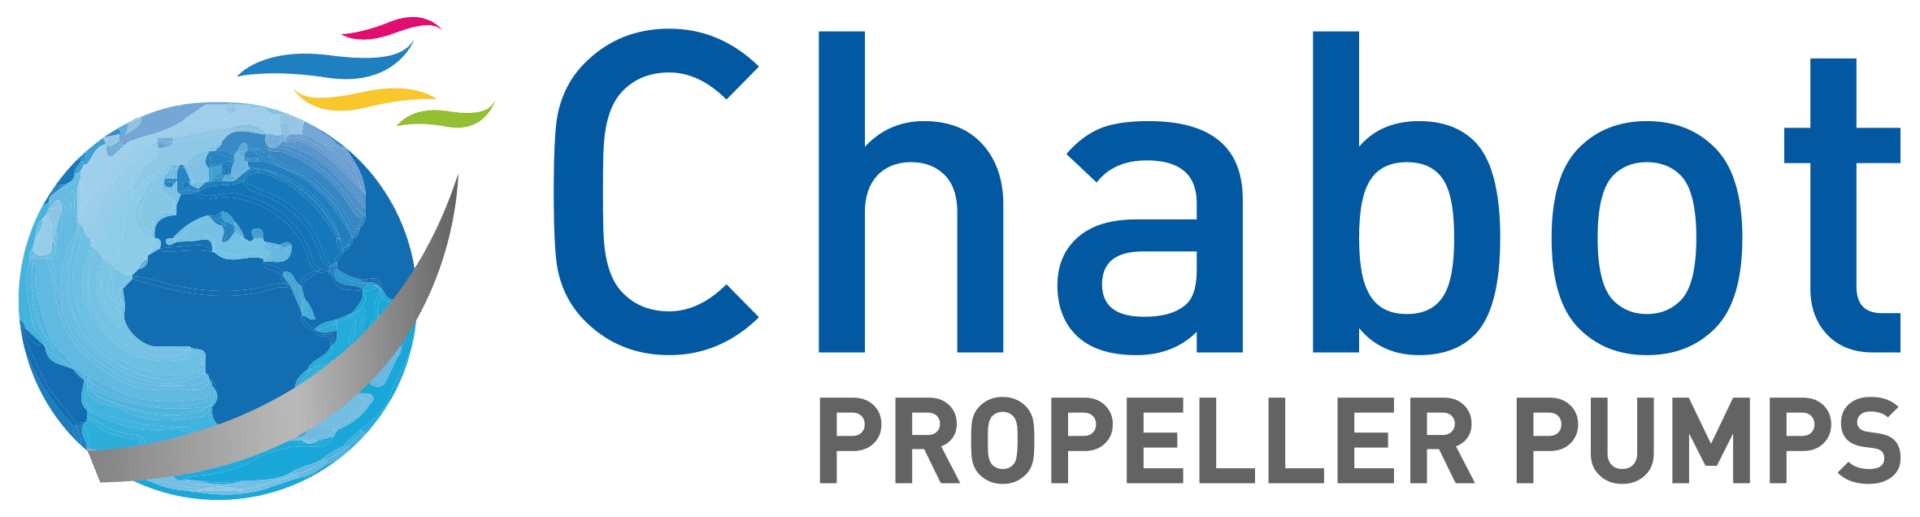 Logo Chabot En